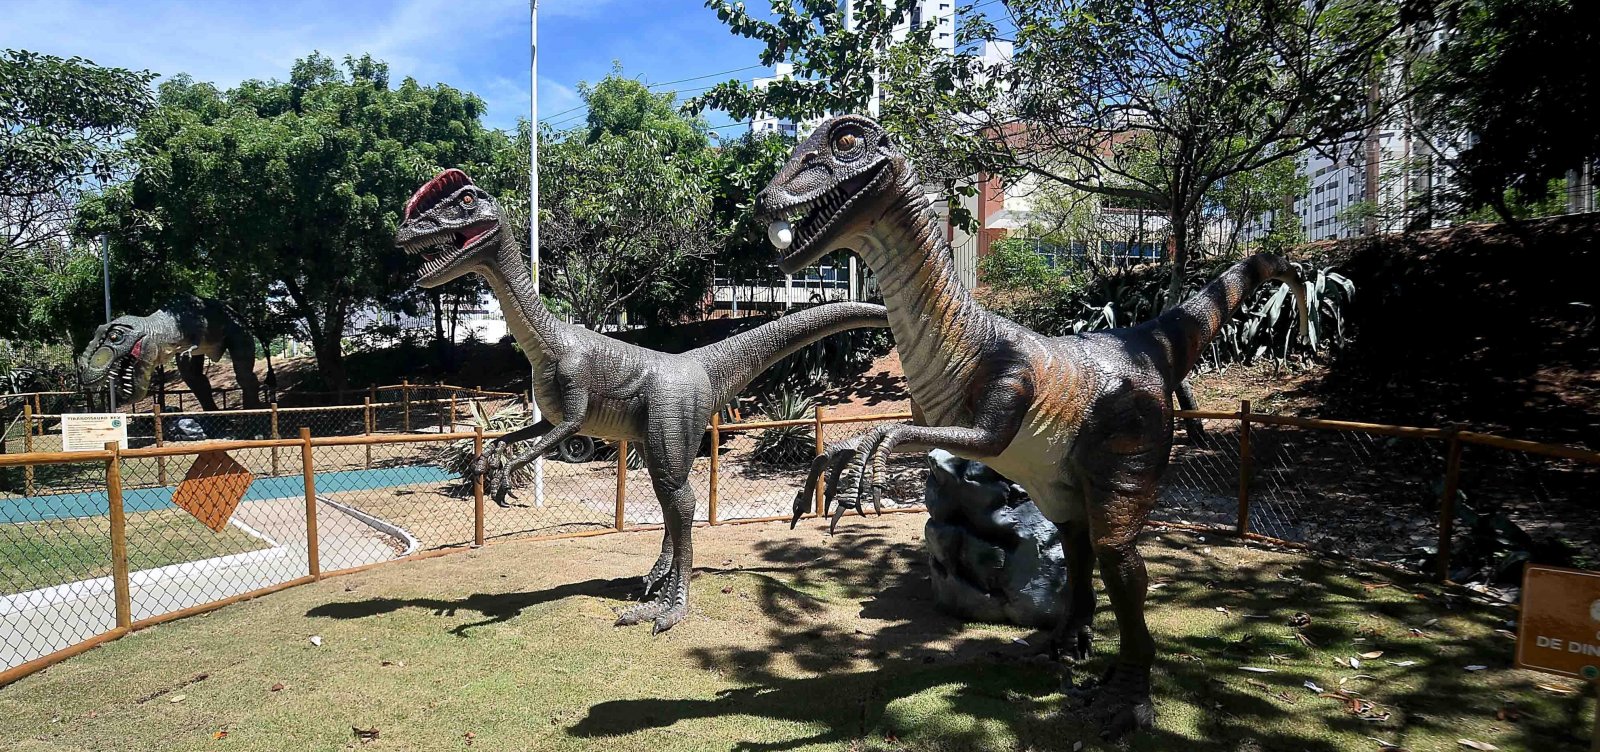 Após aglomerações, número de visitantes da Lagoa dos Dinossauros será limitado a 200 pessoas